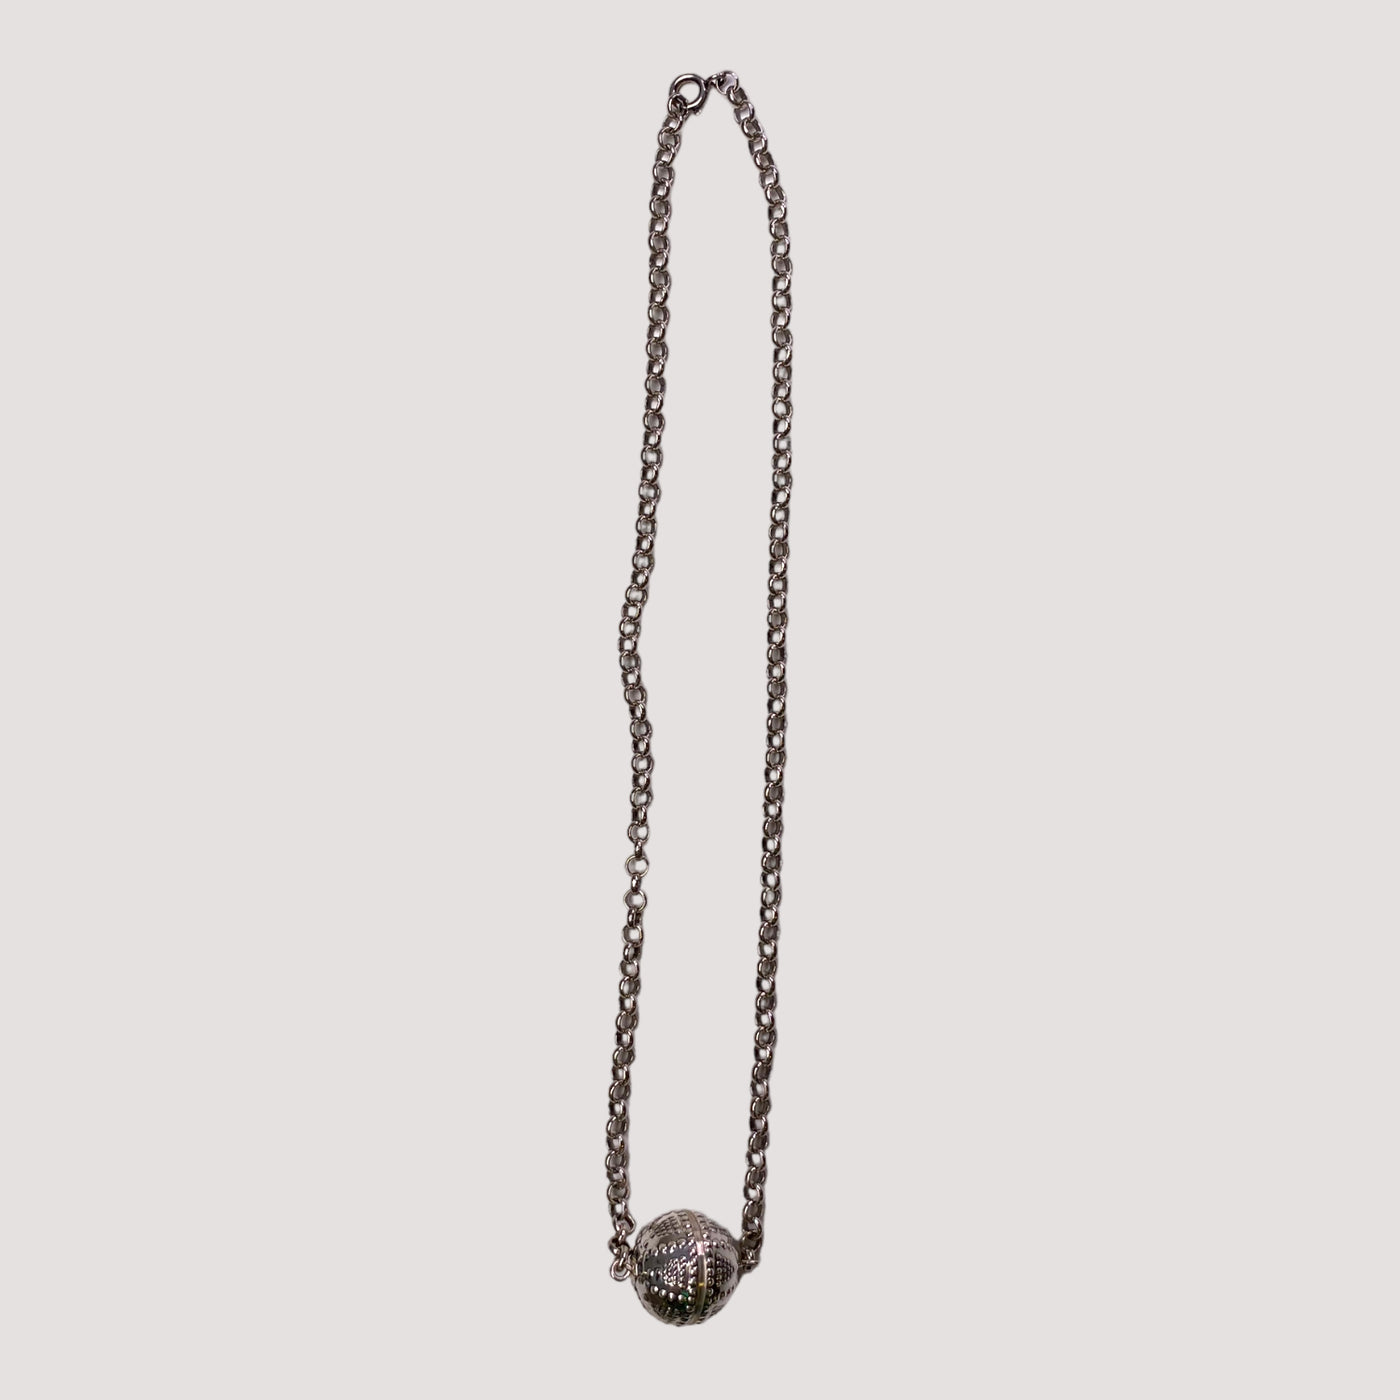 Kalevala Koru Halikon necklace, silver